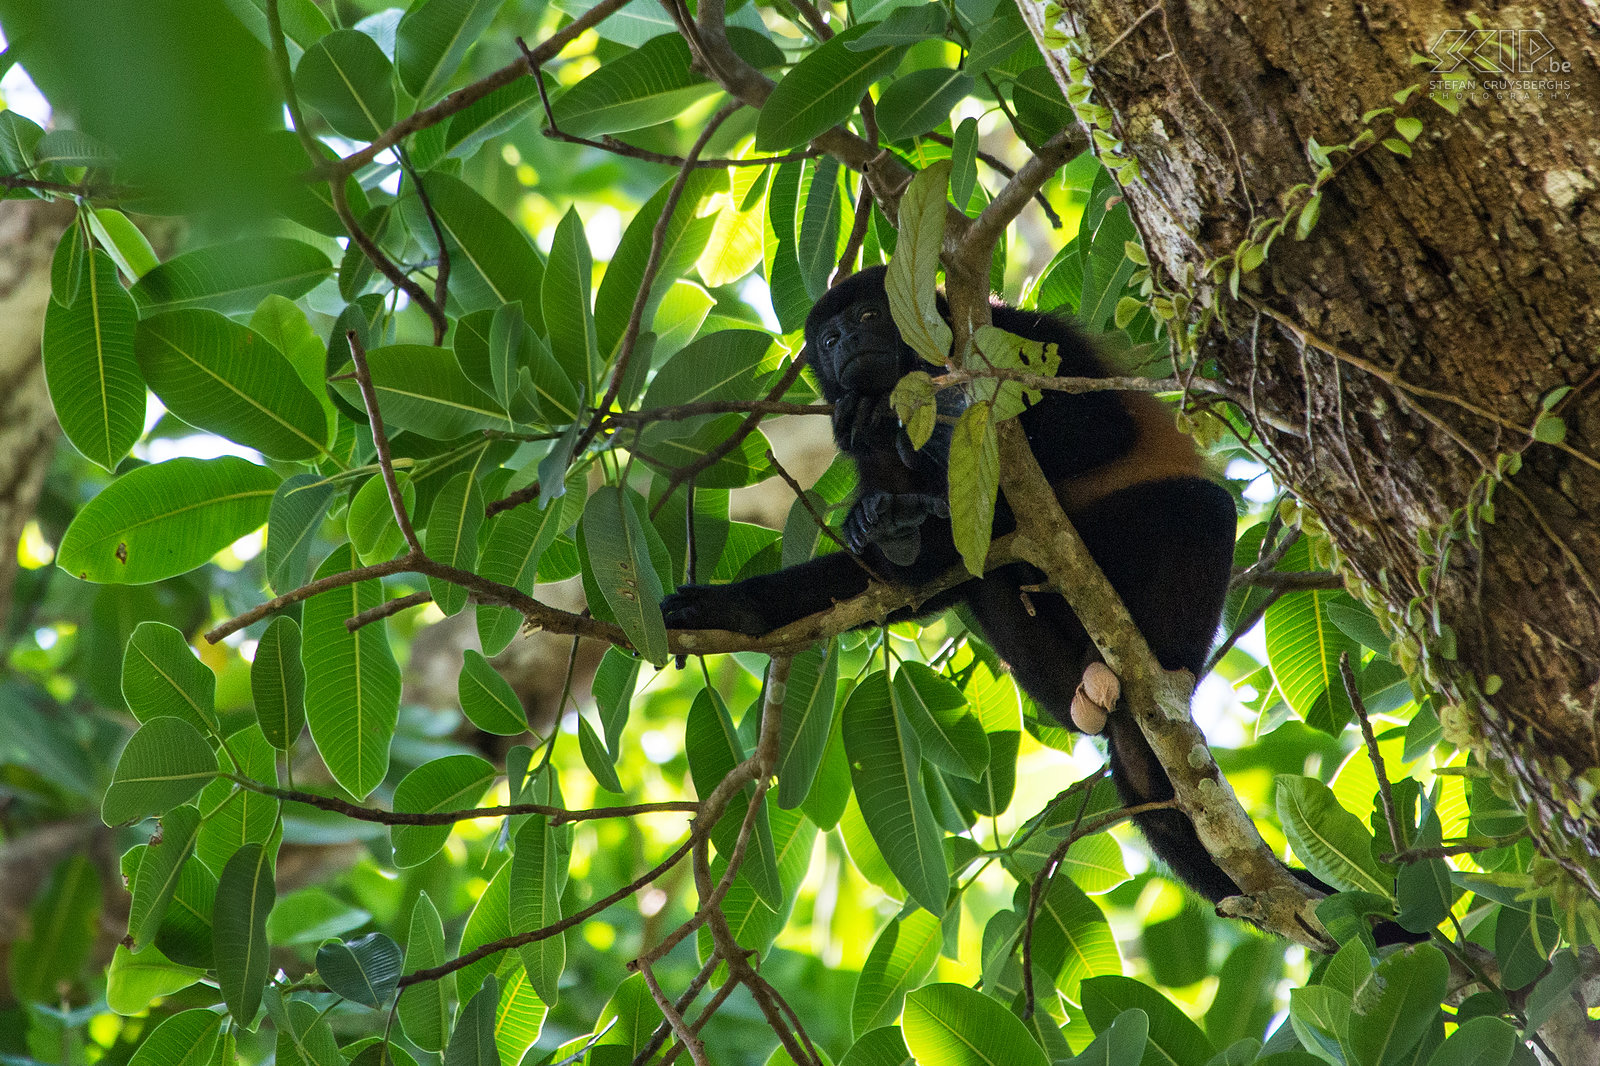 Corcovado - Mantelbrulaap De mantelbrulaap (mantled howler monkey, alouatta palliata) is een aap uit de familie der brulapen, ook bekend als breedneusapen. Het is  een van de grootste apen in Midden-Amerika en mannetjes kunnen tot 9.8kg wegen. Ze voelen zich het meest thuis in bosrijke gebieden zoals mangroven en regenwouden. Deze apen besteden het grootste deel van hun tijd aan rusten en slapen. Mannetjes hebben een groter tongbeen naast de stembanden en daardoor wordt hun geroep versterkt, zodat ze andere mannetjes kunnen vinden zonder veel energie te verbruiken. Stefan Cruysberghs